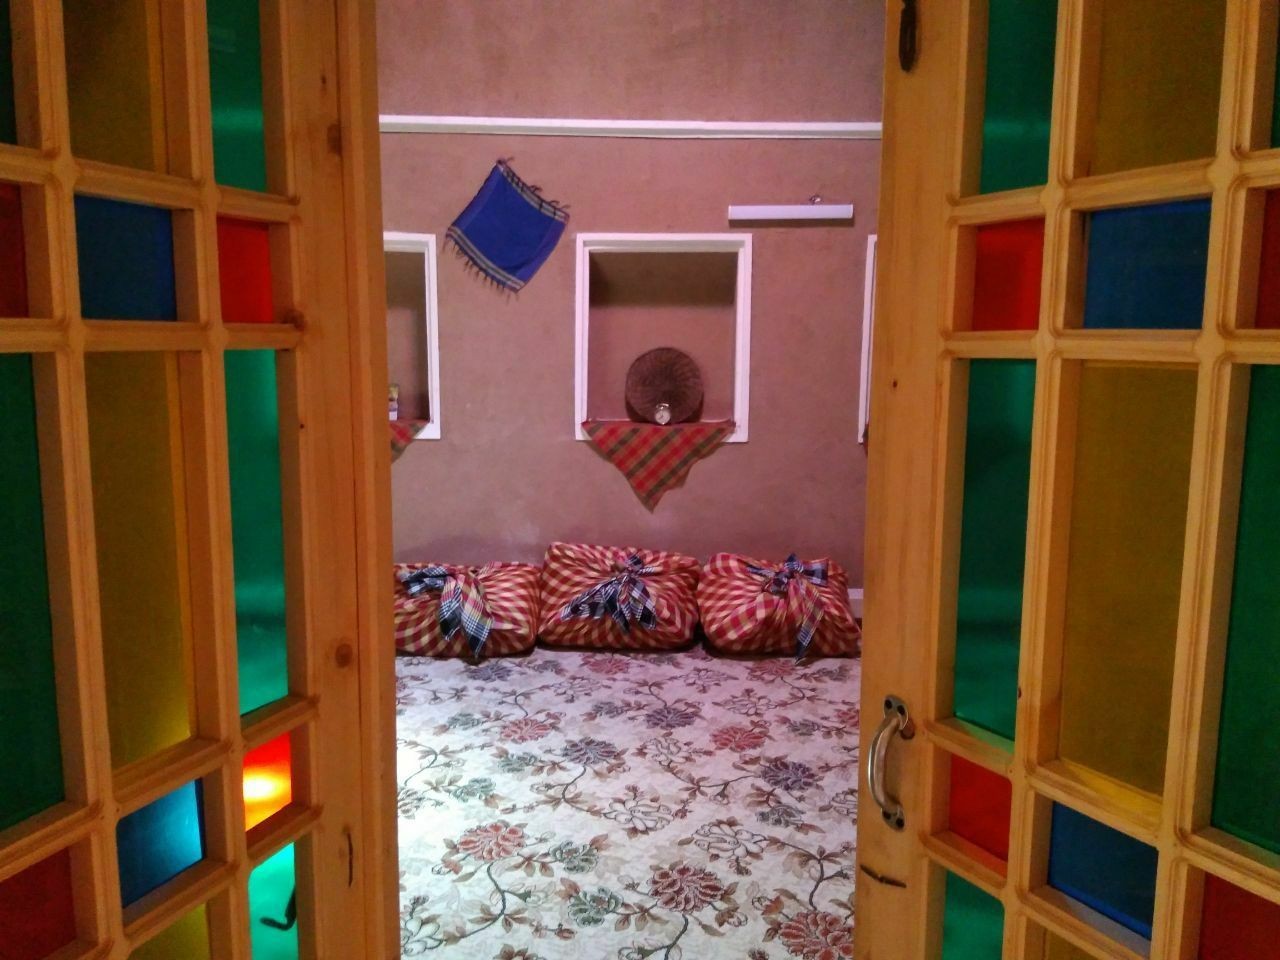 بوم گردی اجاره اقامتگاه بوم گردی سنتی در شاهدیه یزد | باباخداداد 6